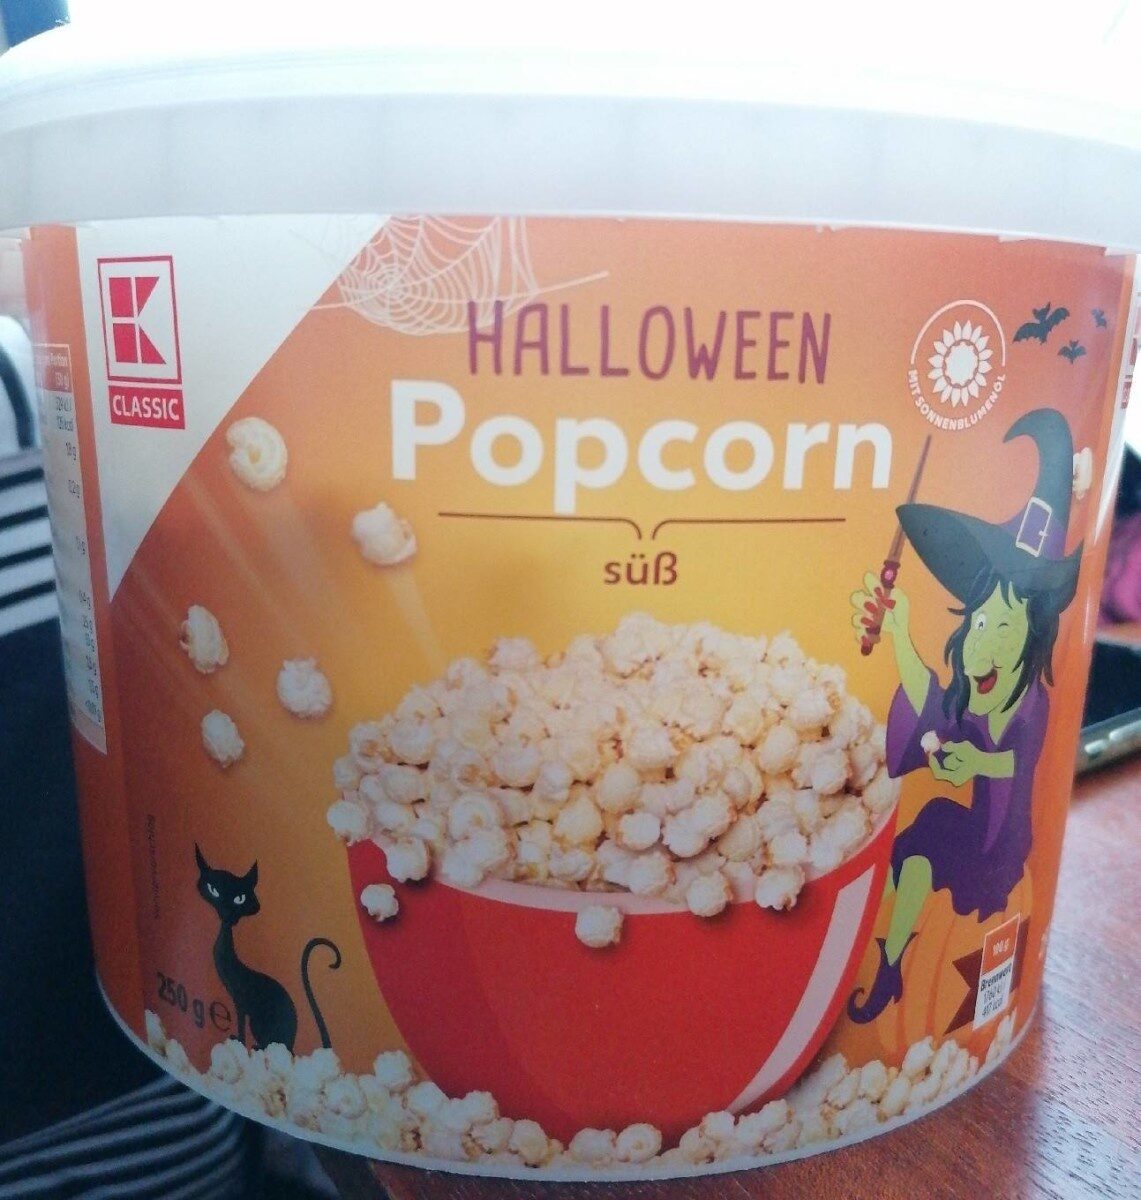 K-Classic Halloween Popcorn süß - Product - de